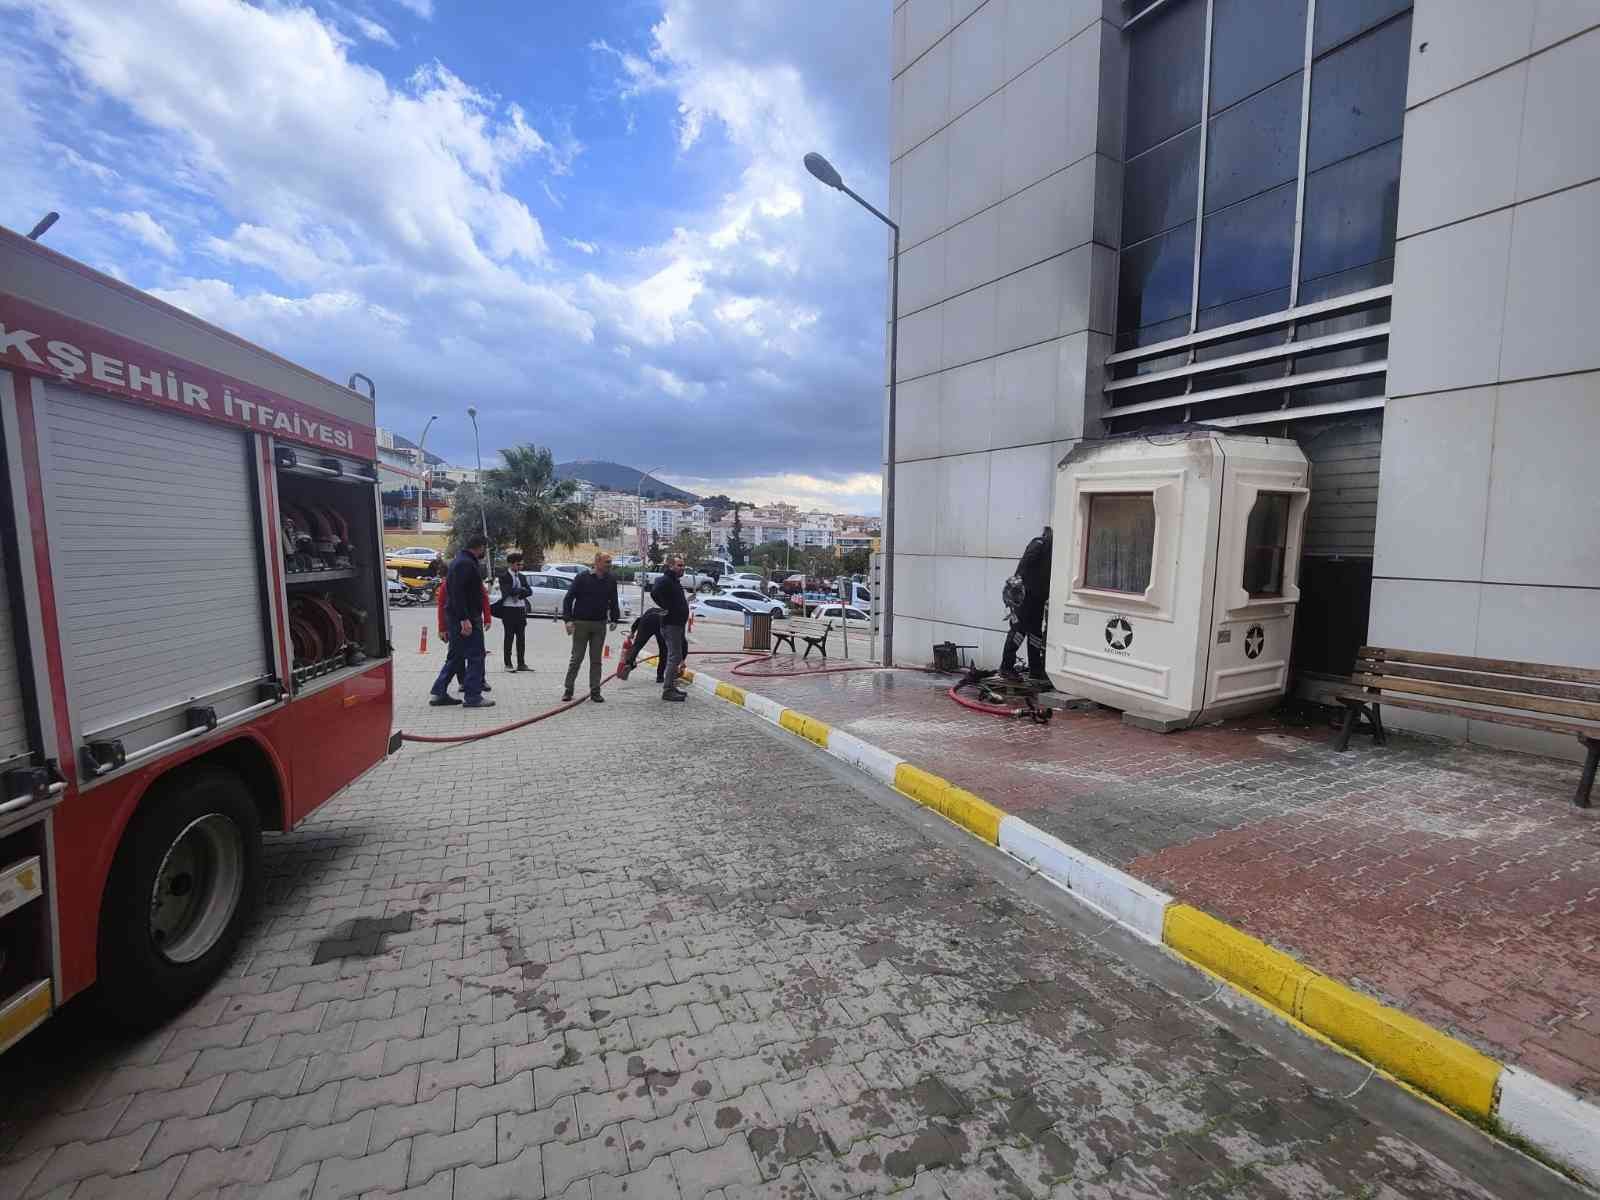 Kuşadası Devlet Hastanesi’nin güvenlik kulübesinde çıkan yangın korkuttu